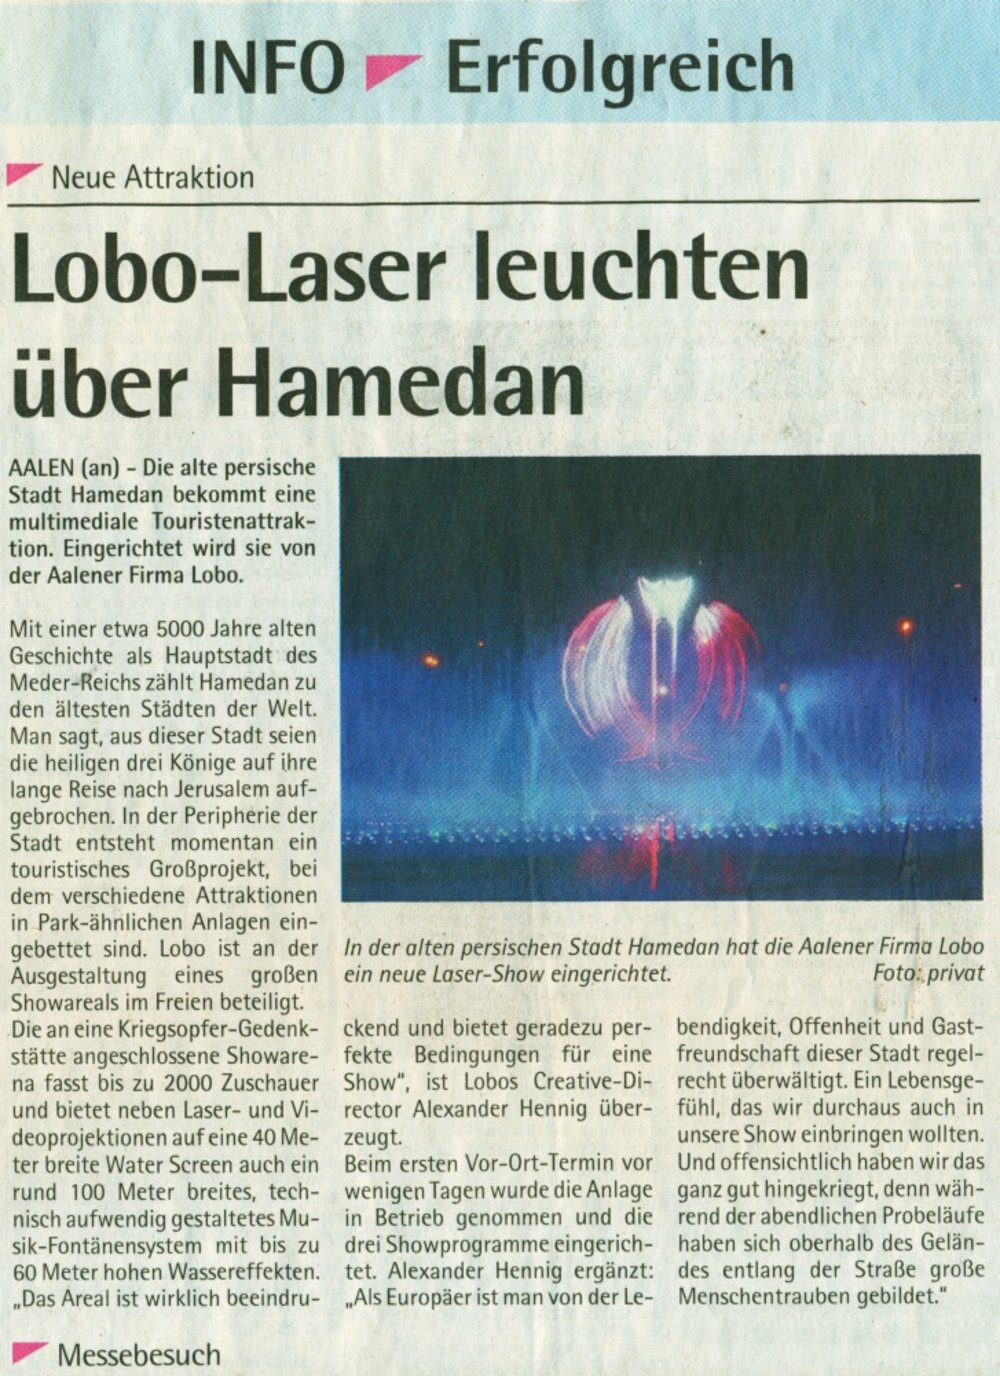 [Translate to English:] Ipf und Jagst Zeitung INFO Der Suedfinder 10 November 2010 S3 Laser leuchten ueber Hamedan